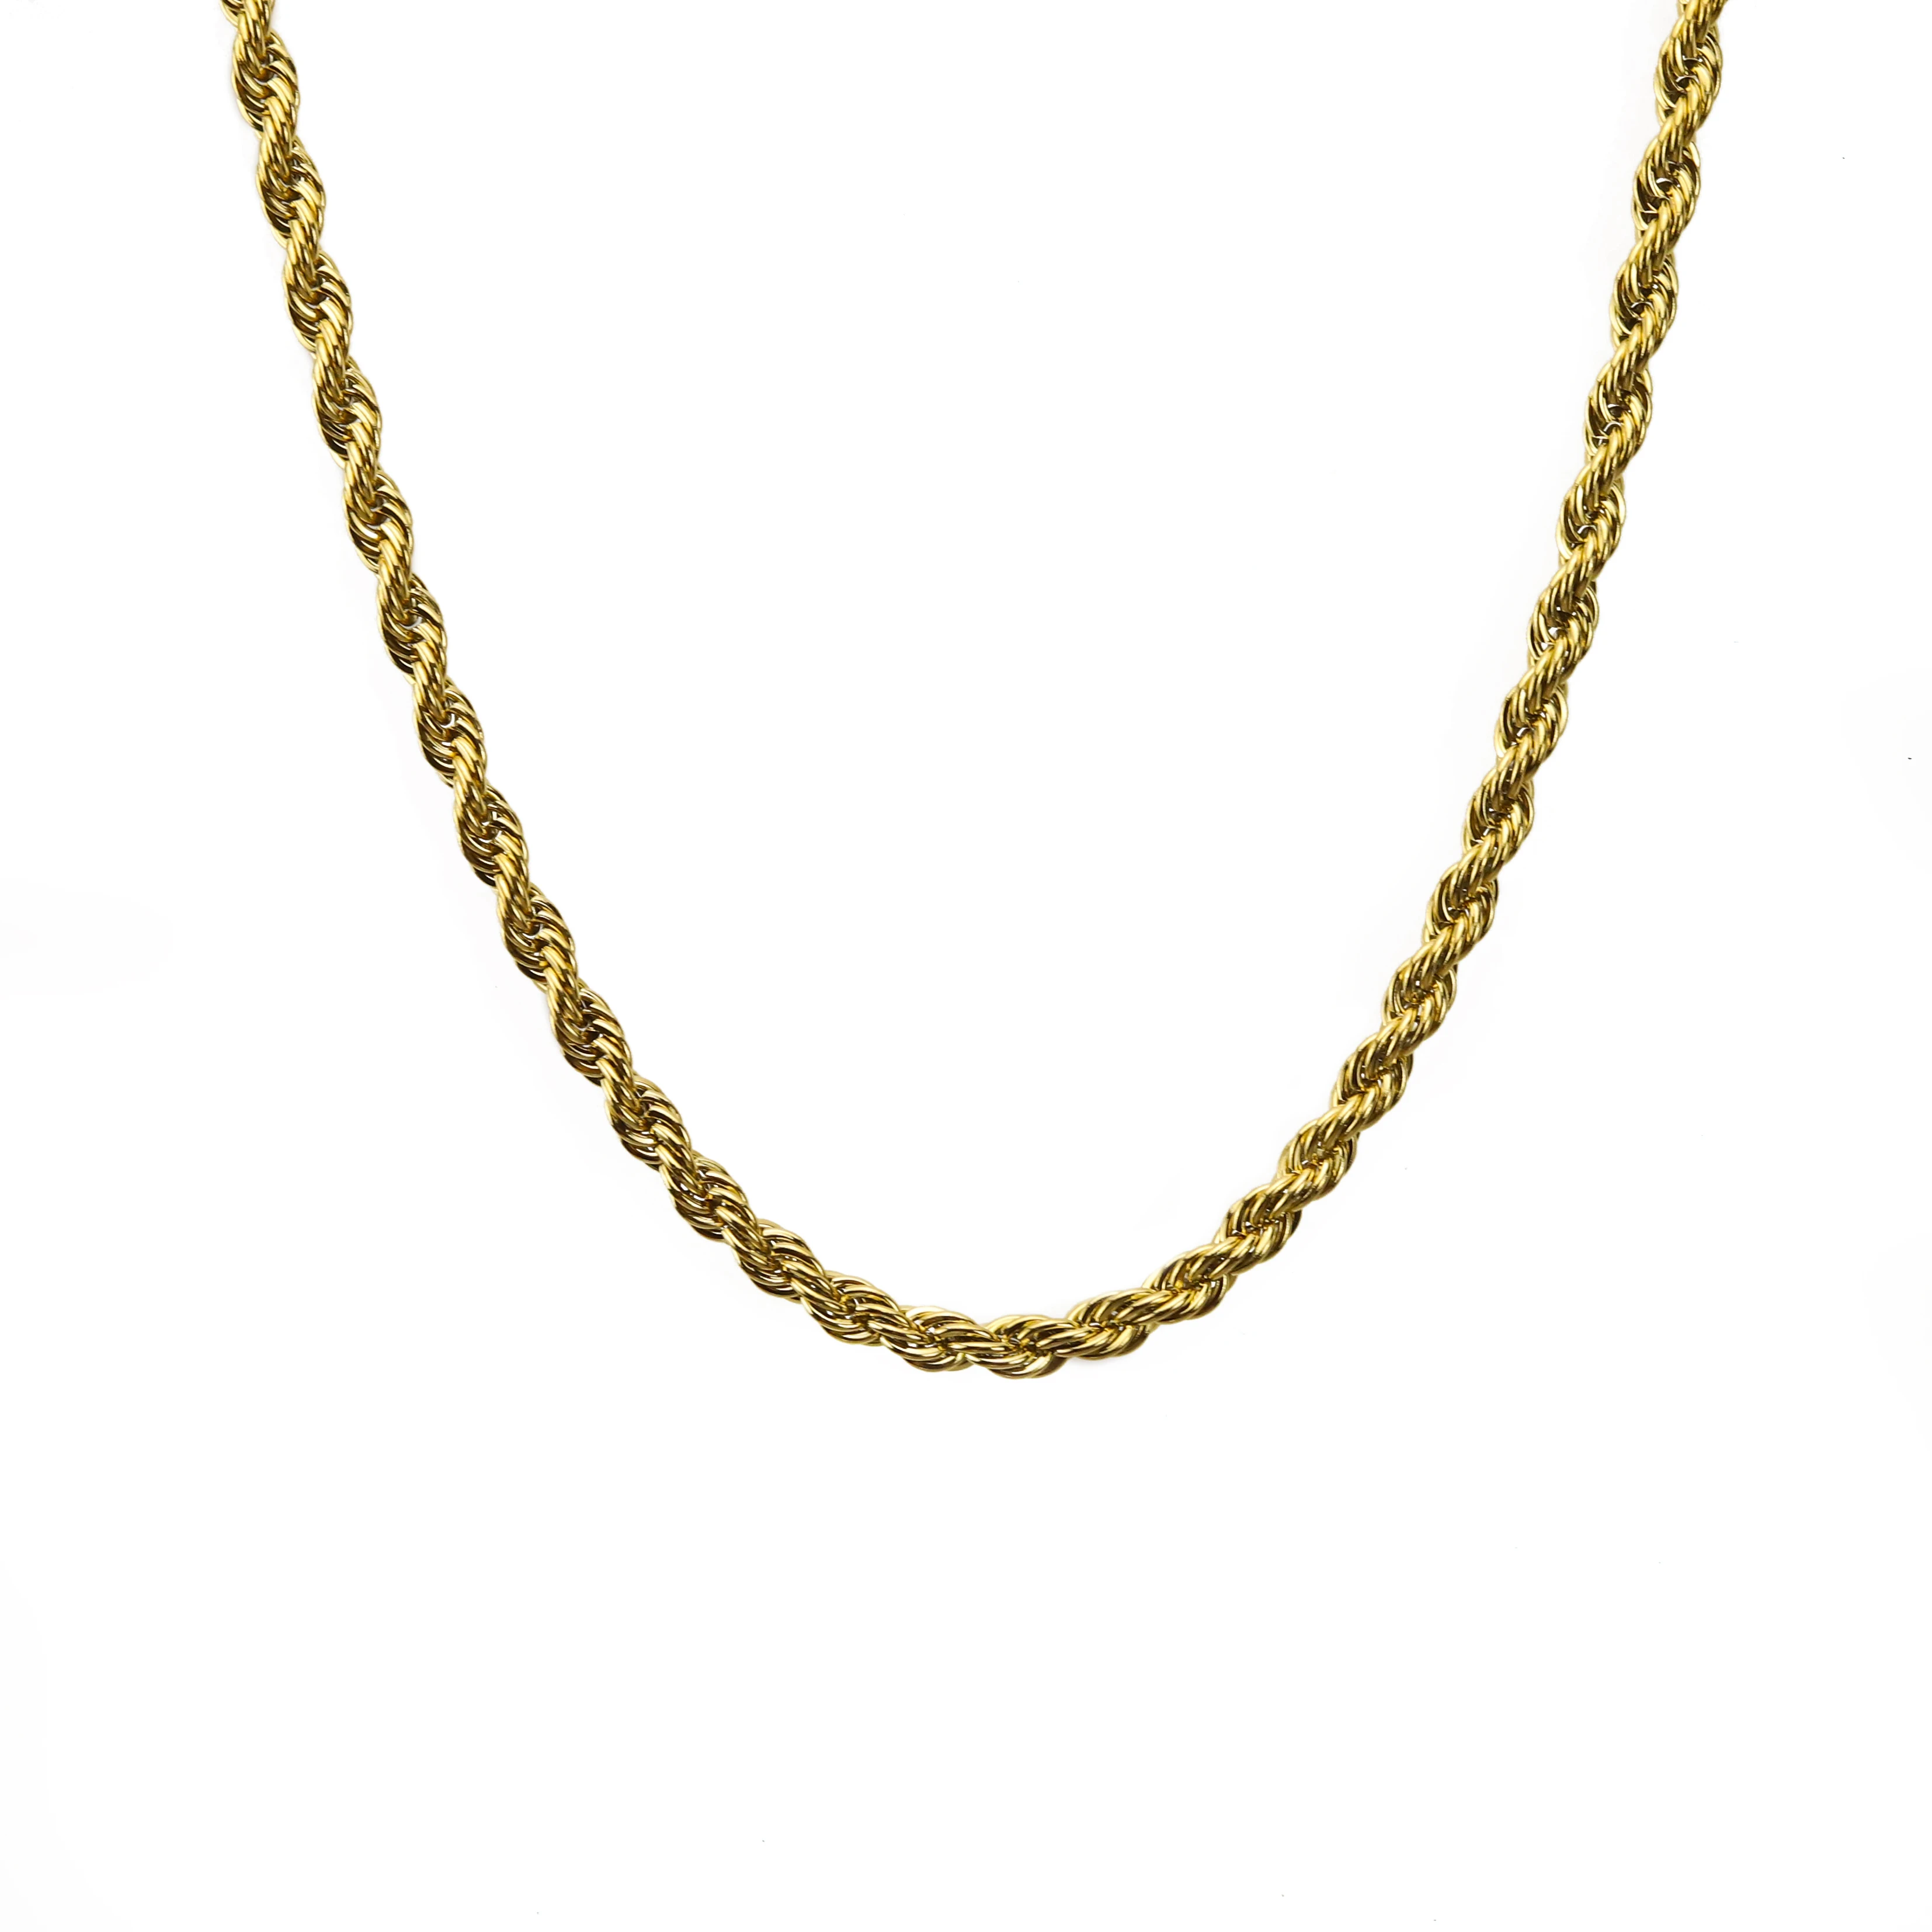 Высококачественное ожерелье в стиле хип-хоп золотого и черного цветов из